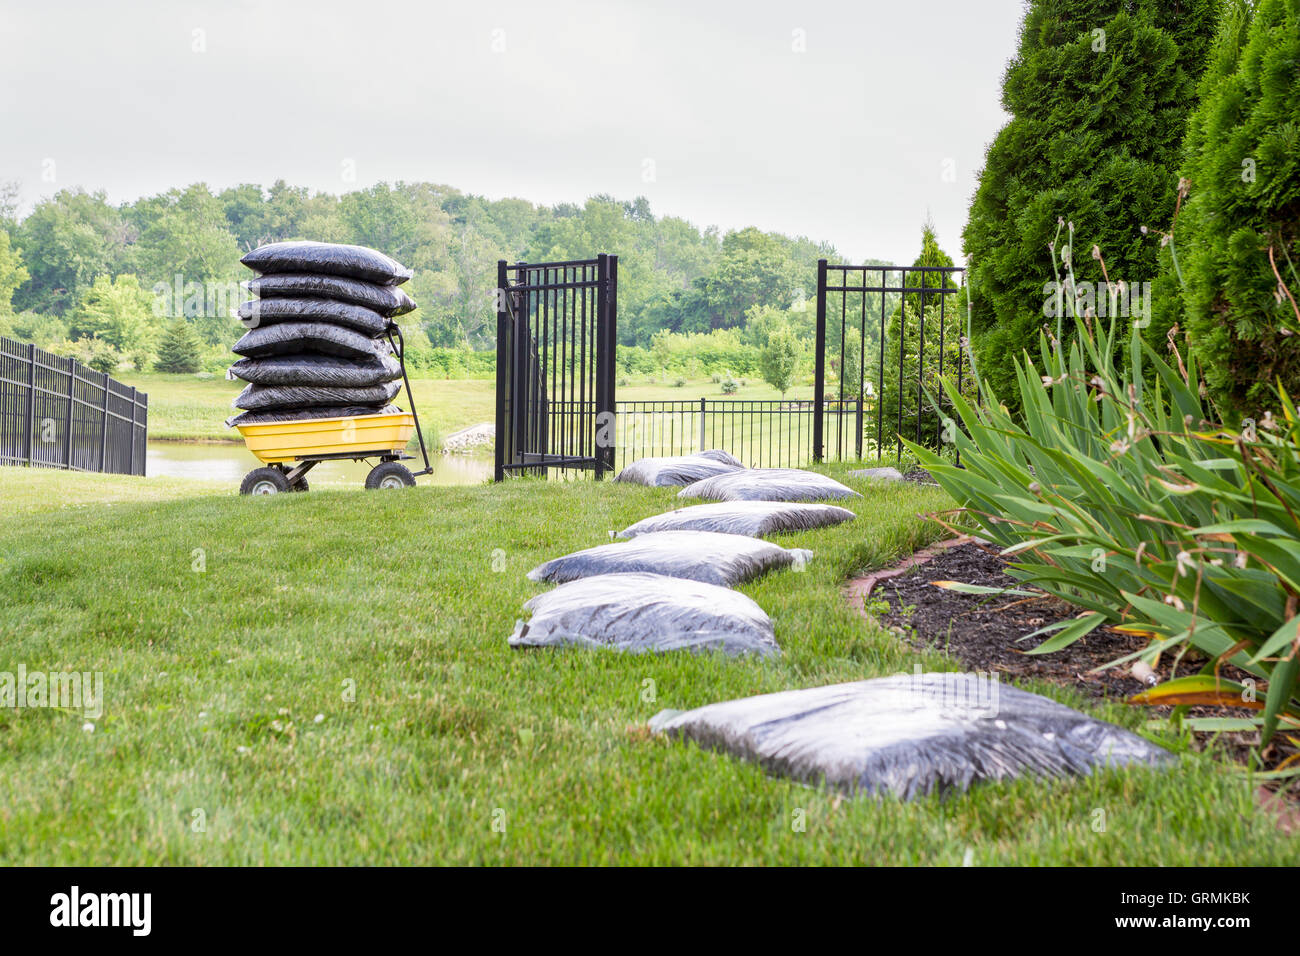 Le paillage du jardin prend du temps et des efforts avec des sacs de paillis disposés sur la pelouse à côté du parterre dans une longue rangée en attente Banque D'Images